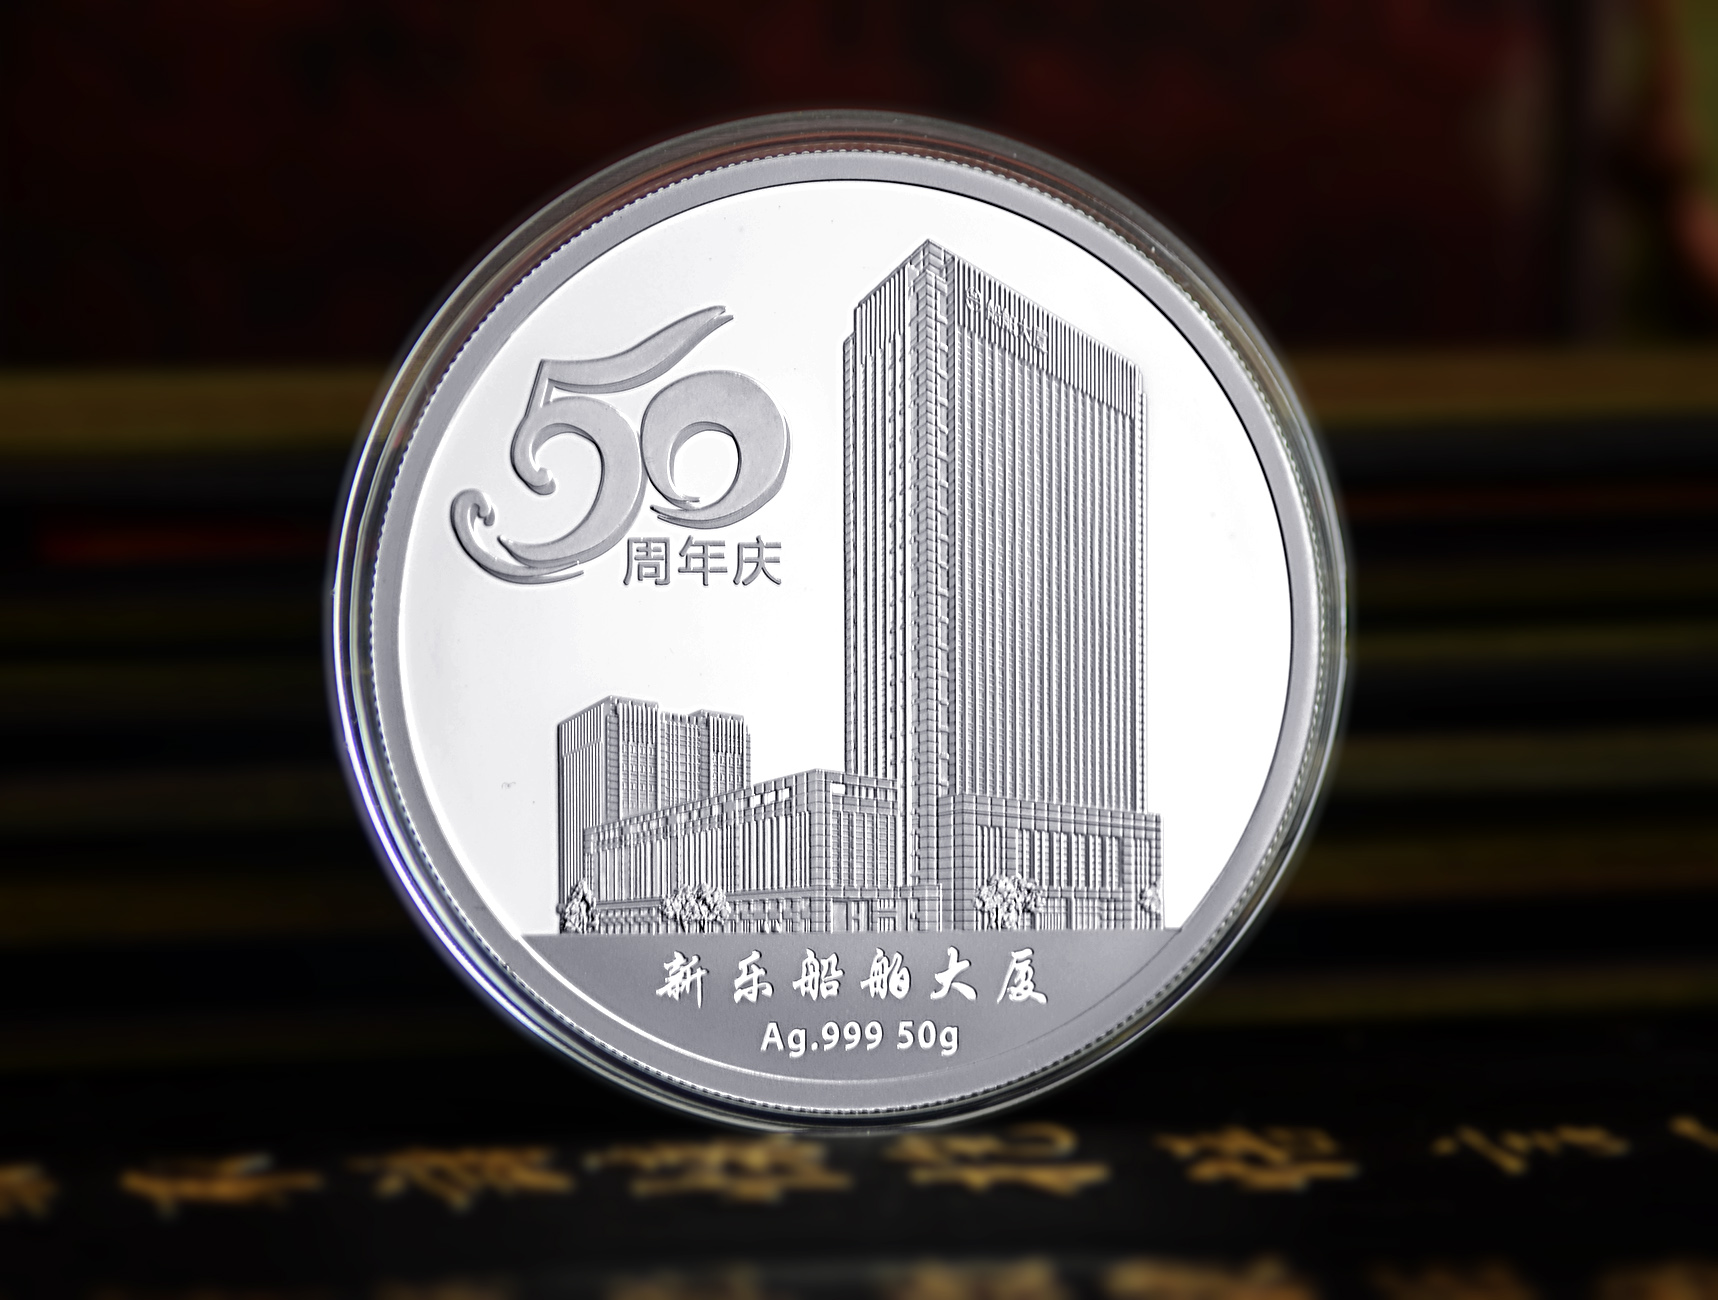 宁波新乐造船集团有限公司50周年纪念章